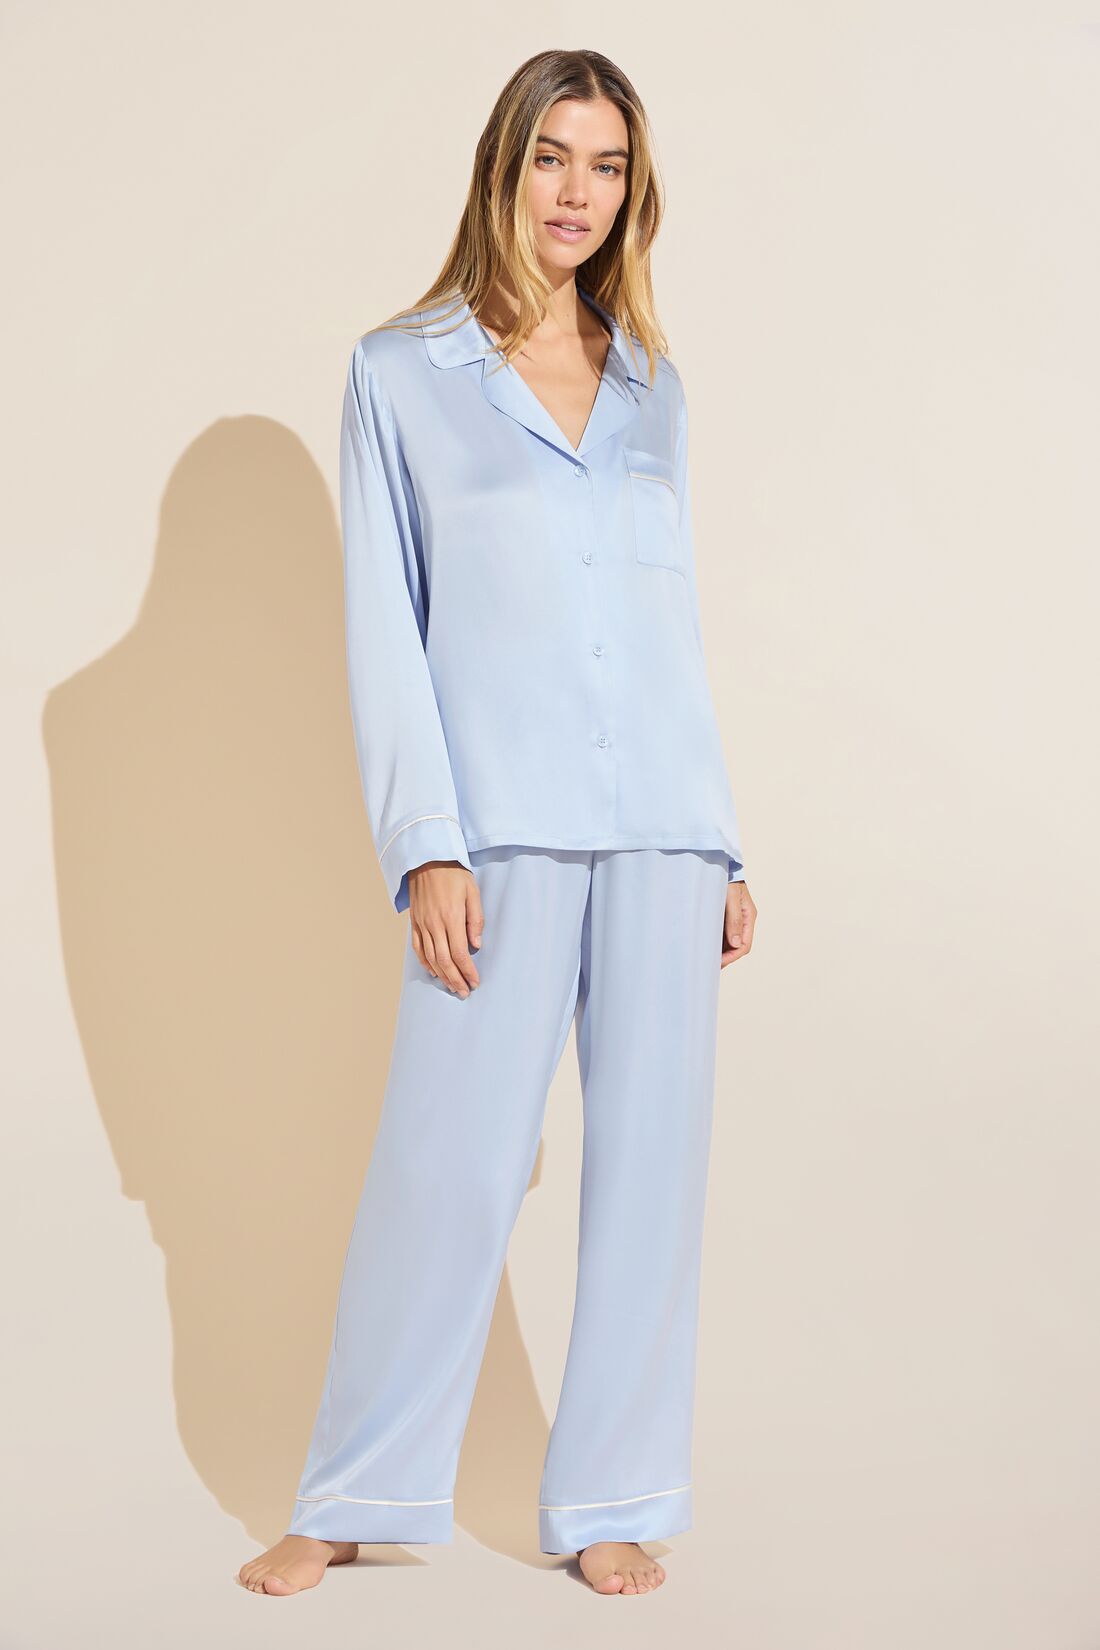 Sets Elephant Pajamas Women Cotton Home Wear Cute Sleep T Shirt Tops Shorts  PJS Sleepwear Nightwear Teen Girls price in UAE,  UAE